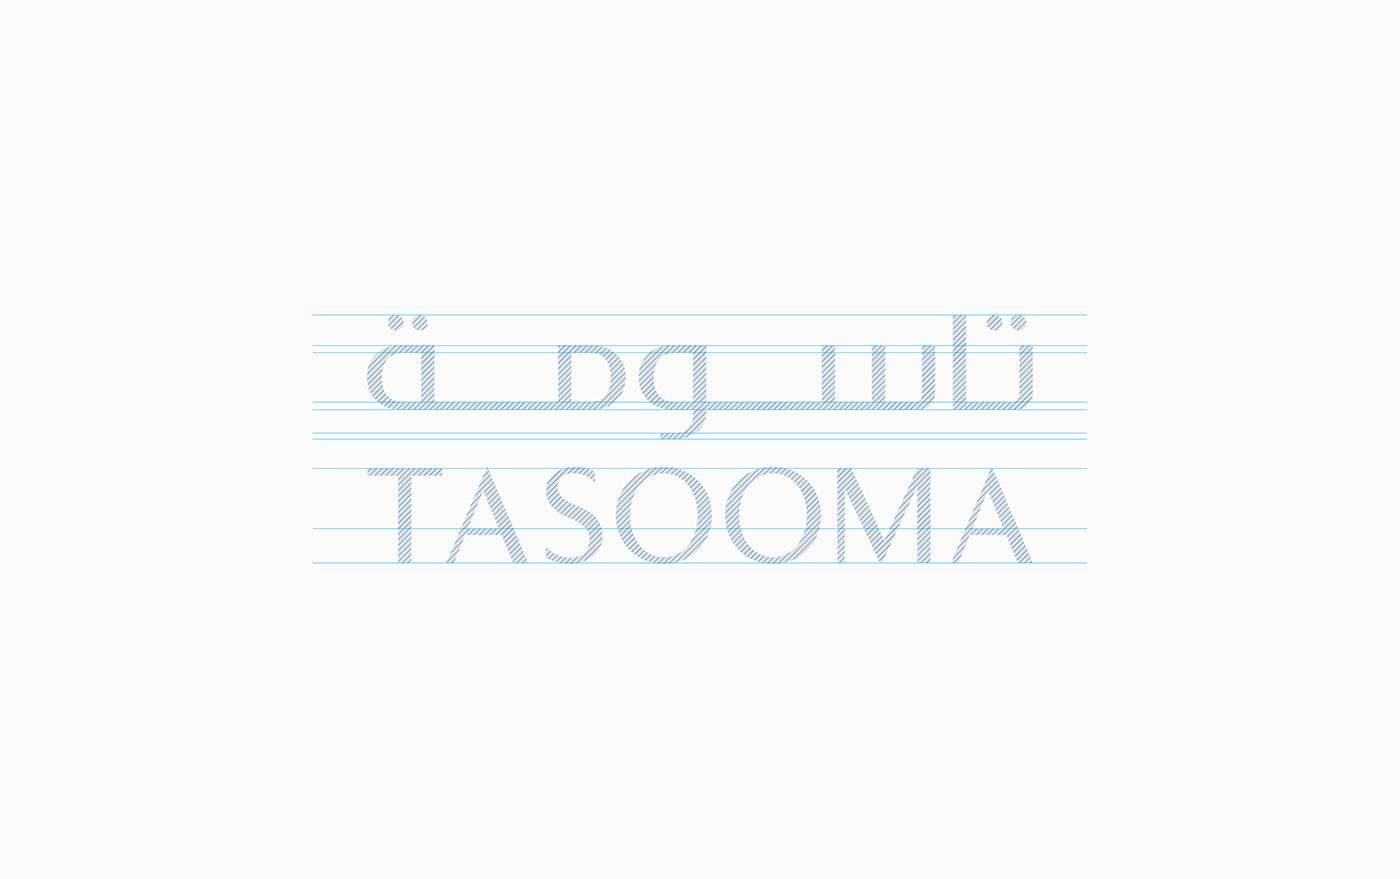 Tasooma